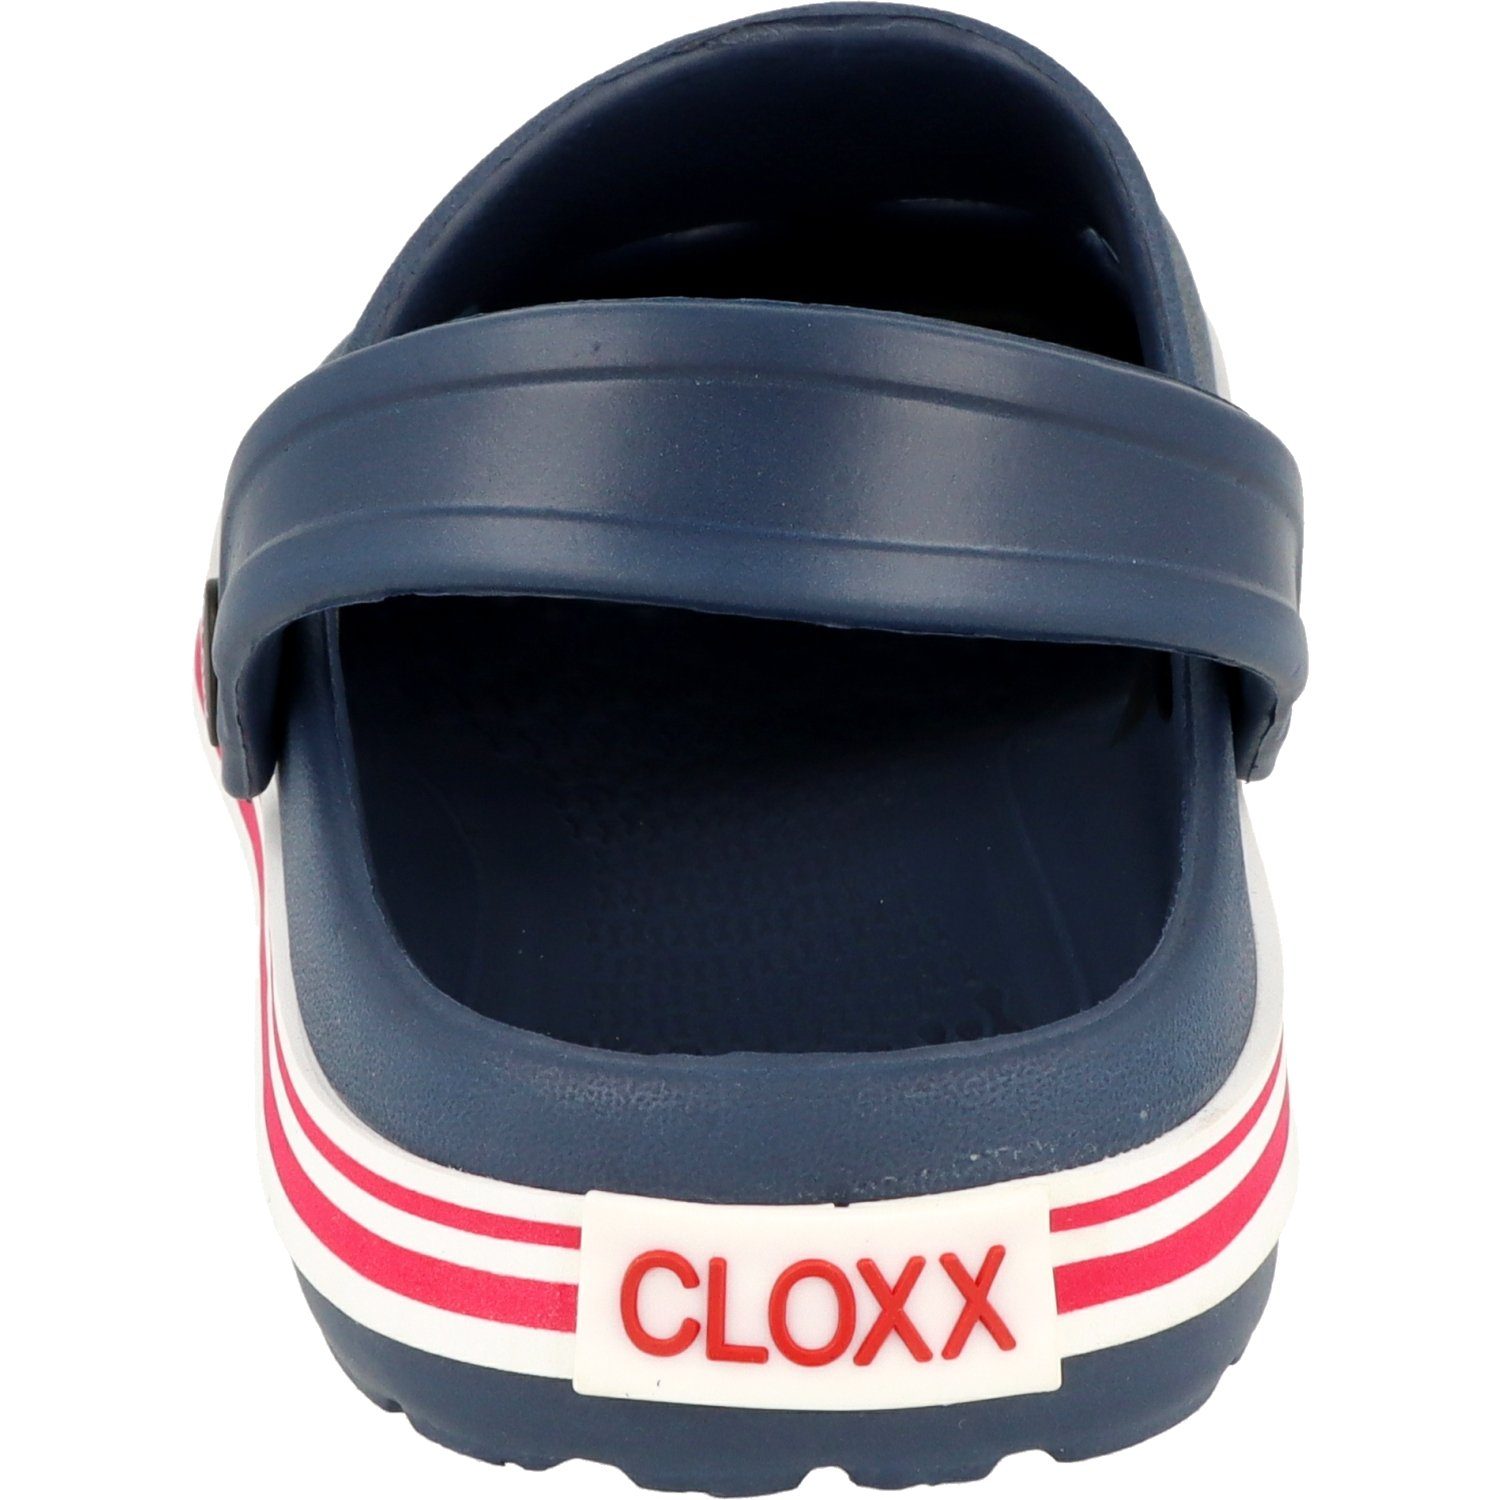 Cloxx Unisex Gr.28-46 Schuhe R88410.45 Hausschuhe Gummi Pantoletten Clog Blau